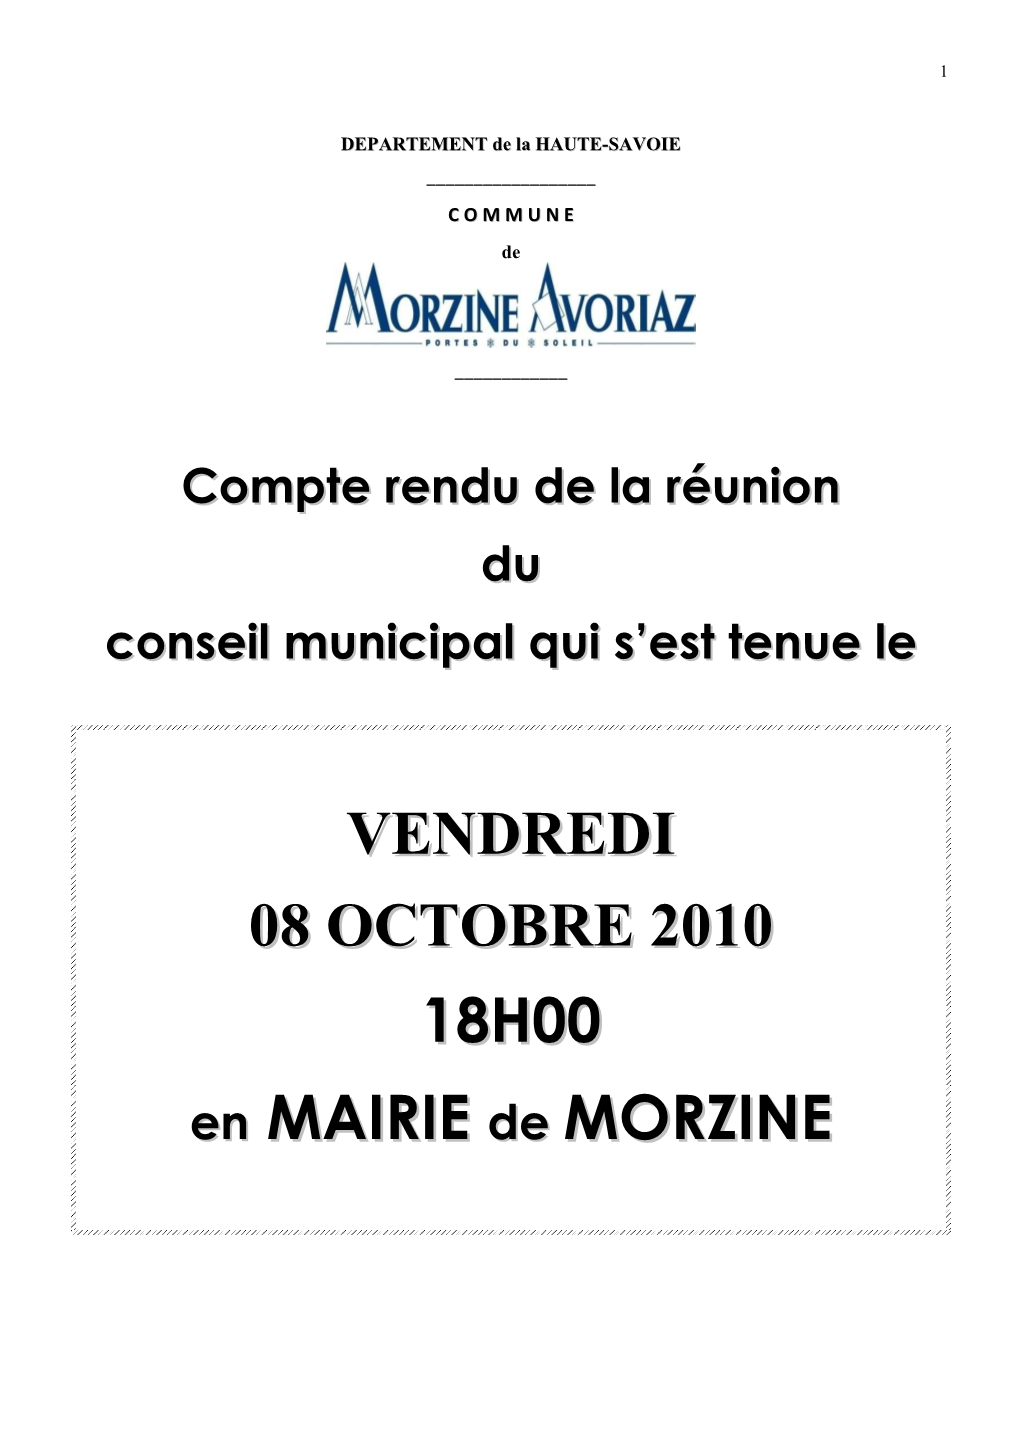 VENDREDI 08 OCTOBRE 2010 18H00 En MAIRIE De MORZINE